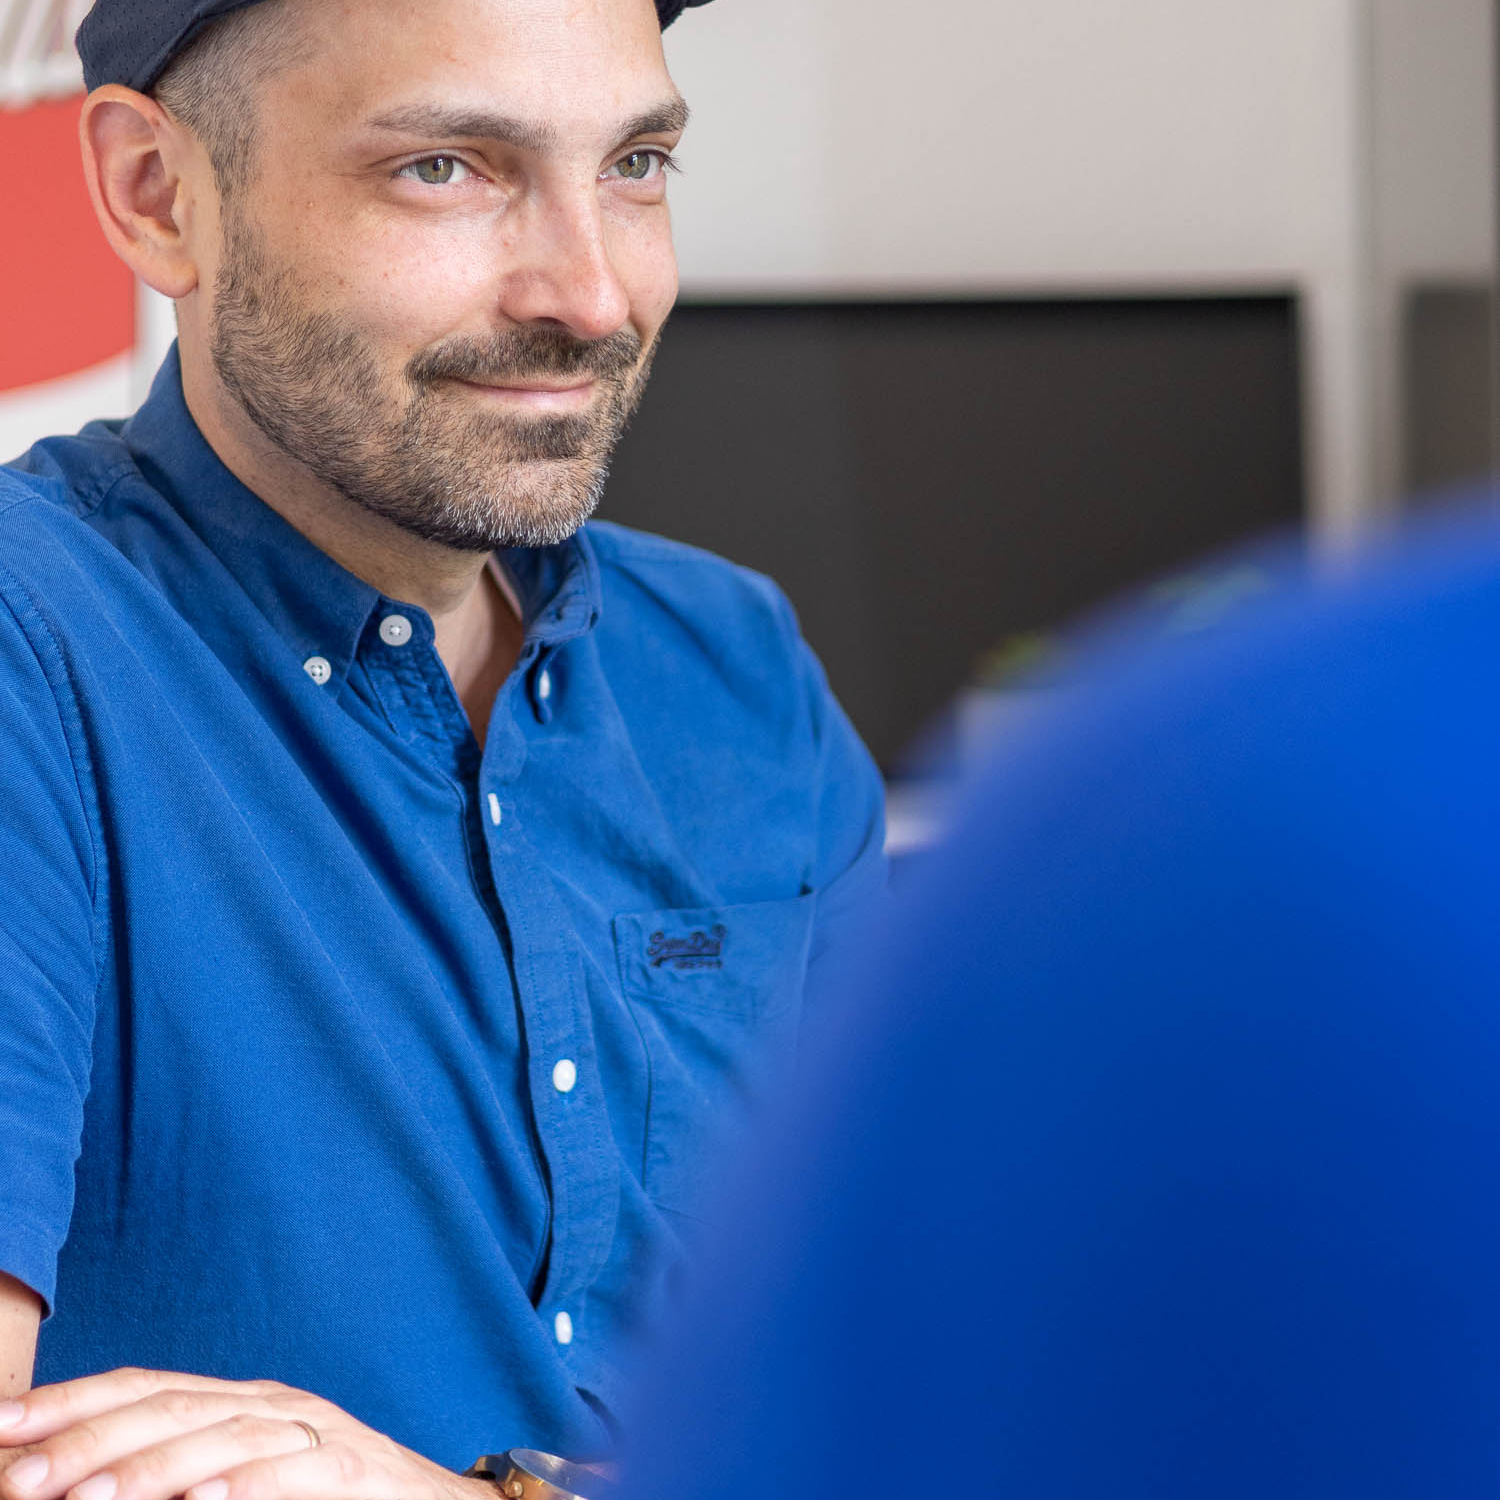 Der bärtige Mann in blauem Hemd und Mütze einer Imagefilmagentur hört einem Gespräch aufmerksam zu.